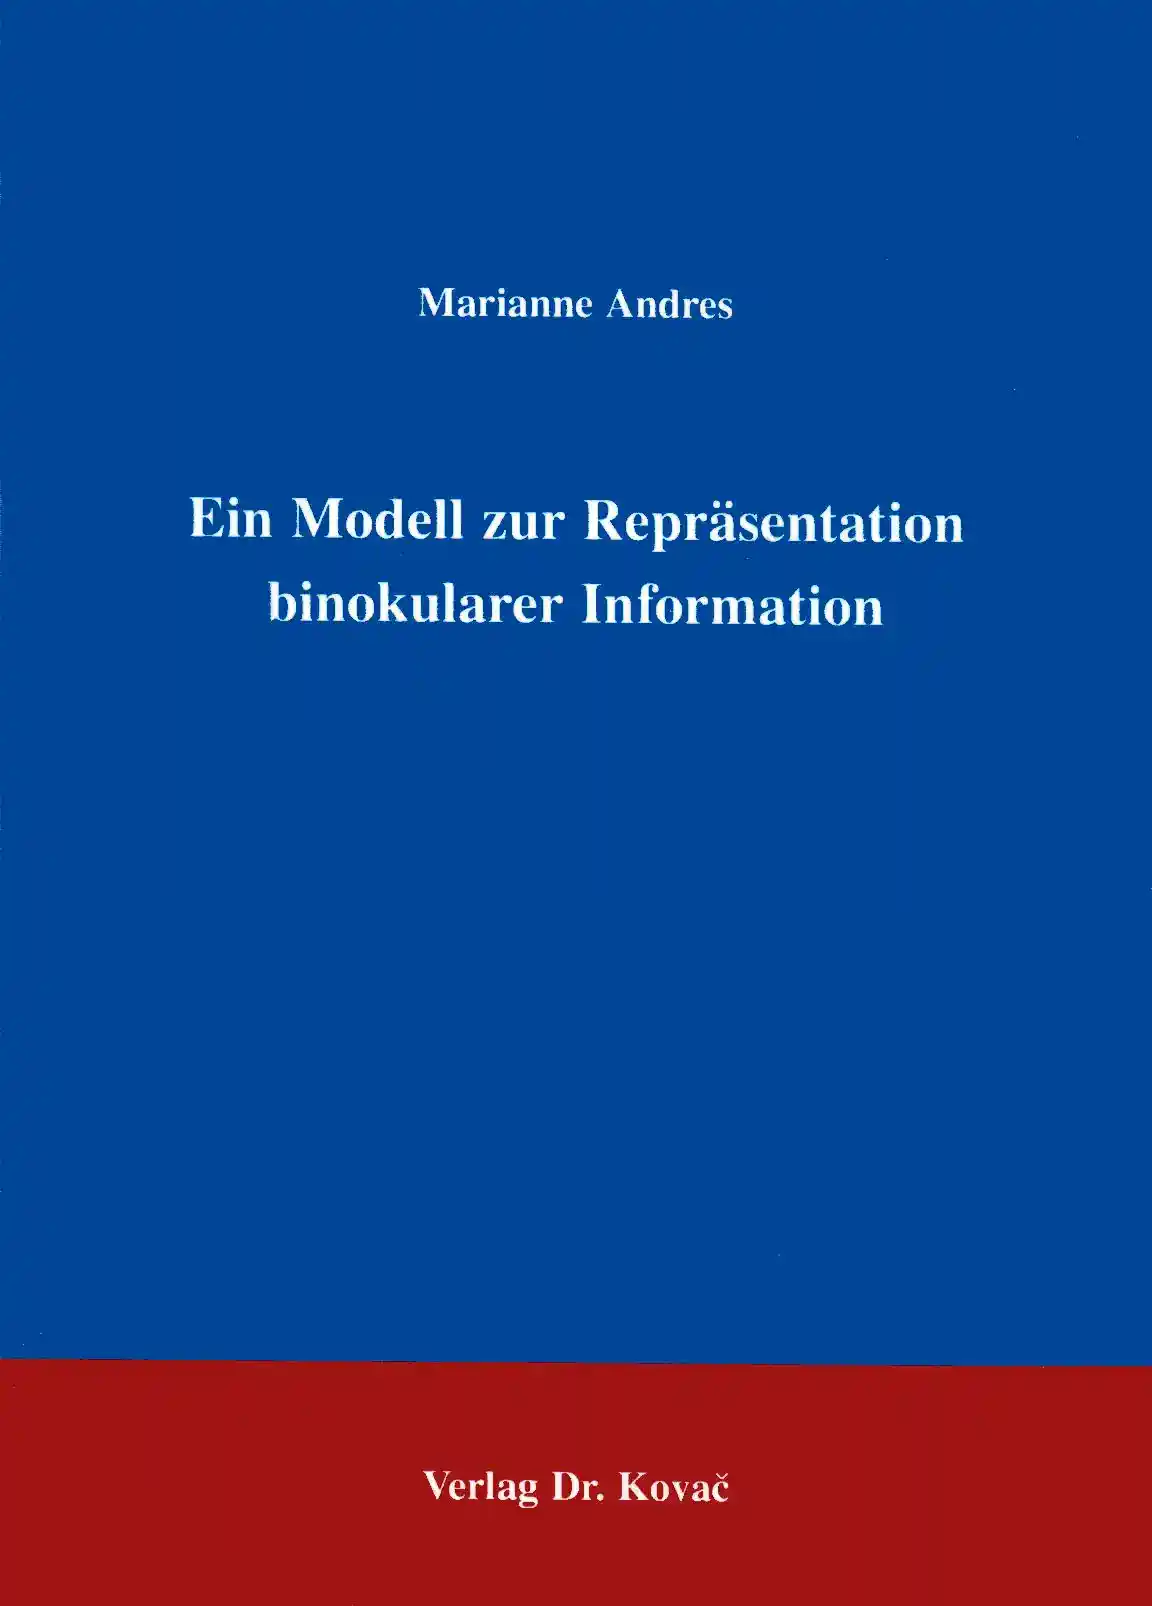 Ein Modell zur Repräsentation binokularer Information (Forschungsarbeit)